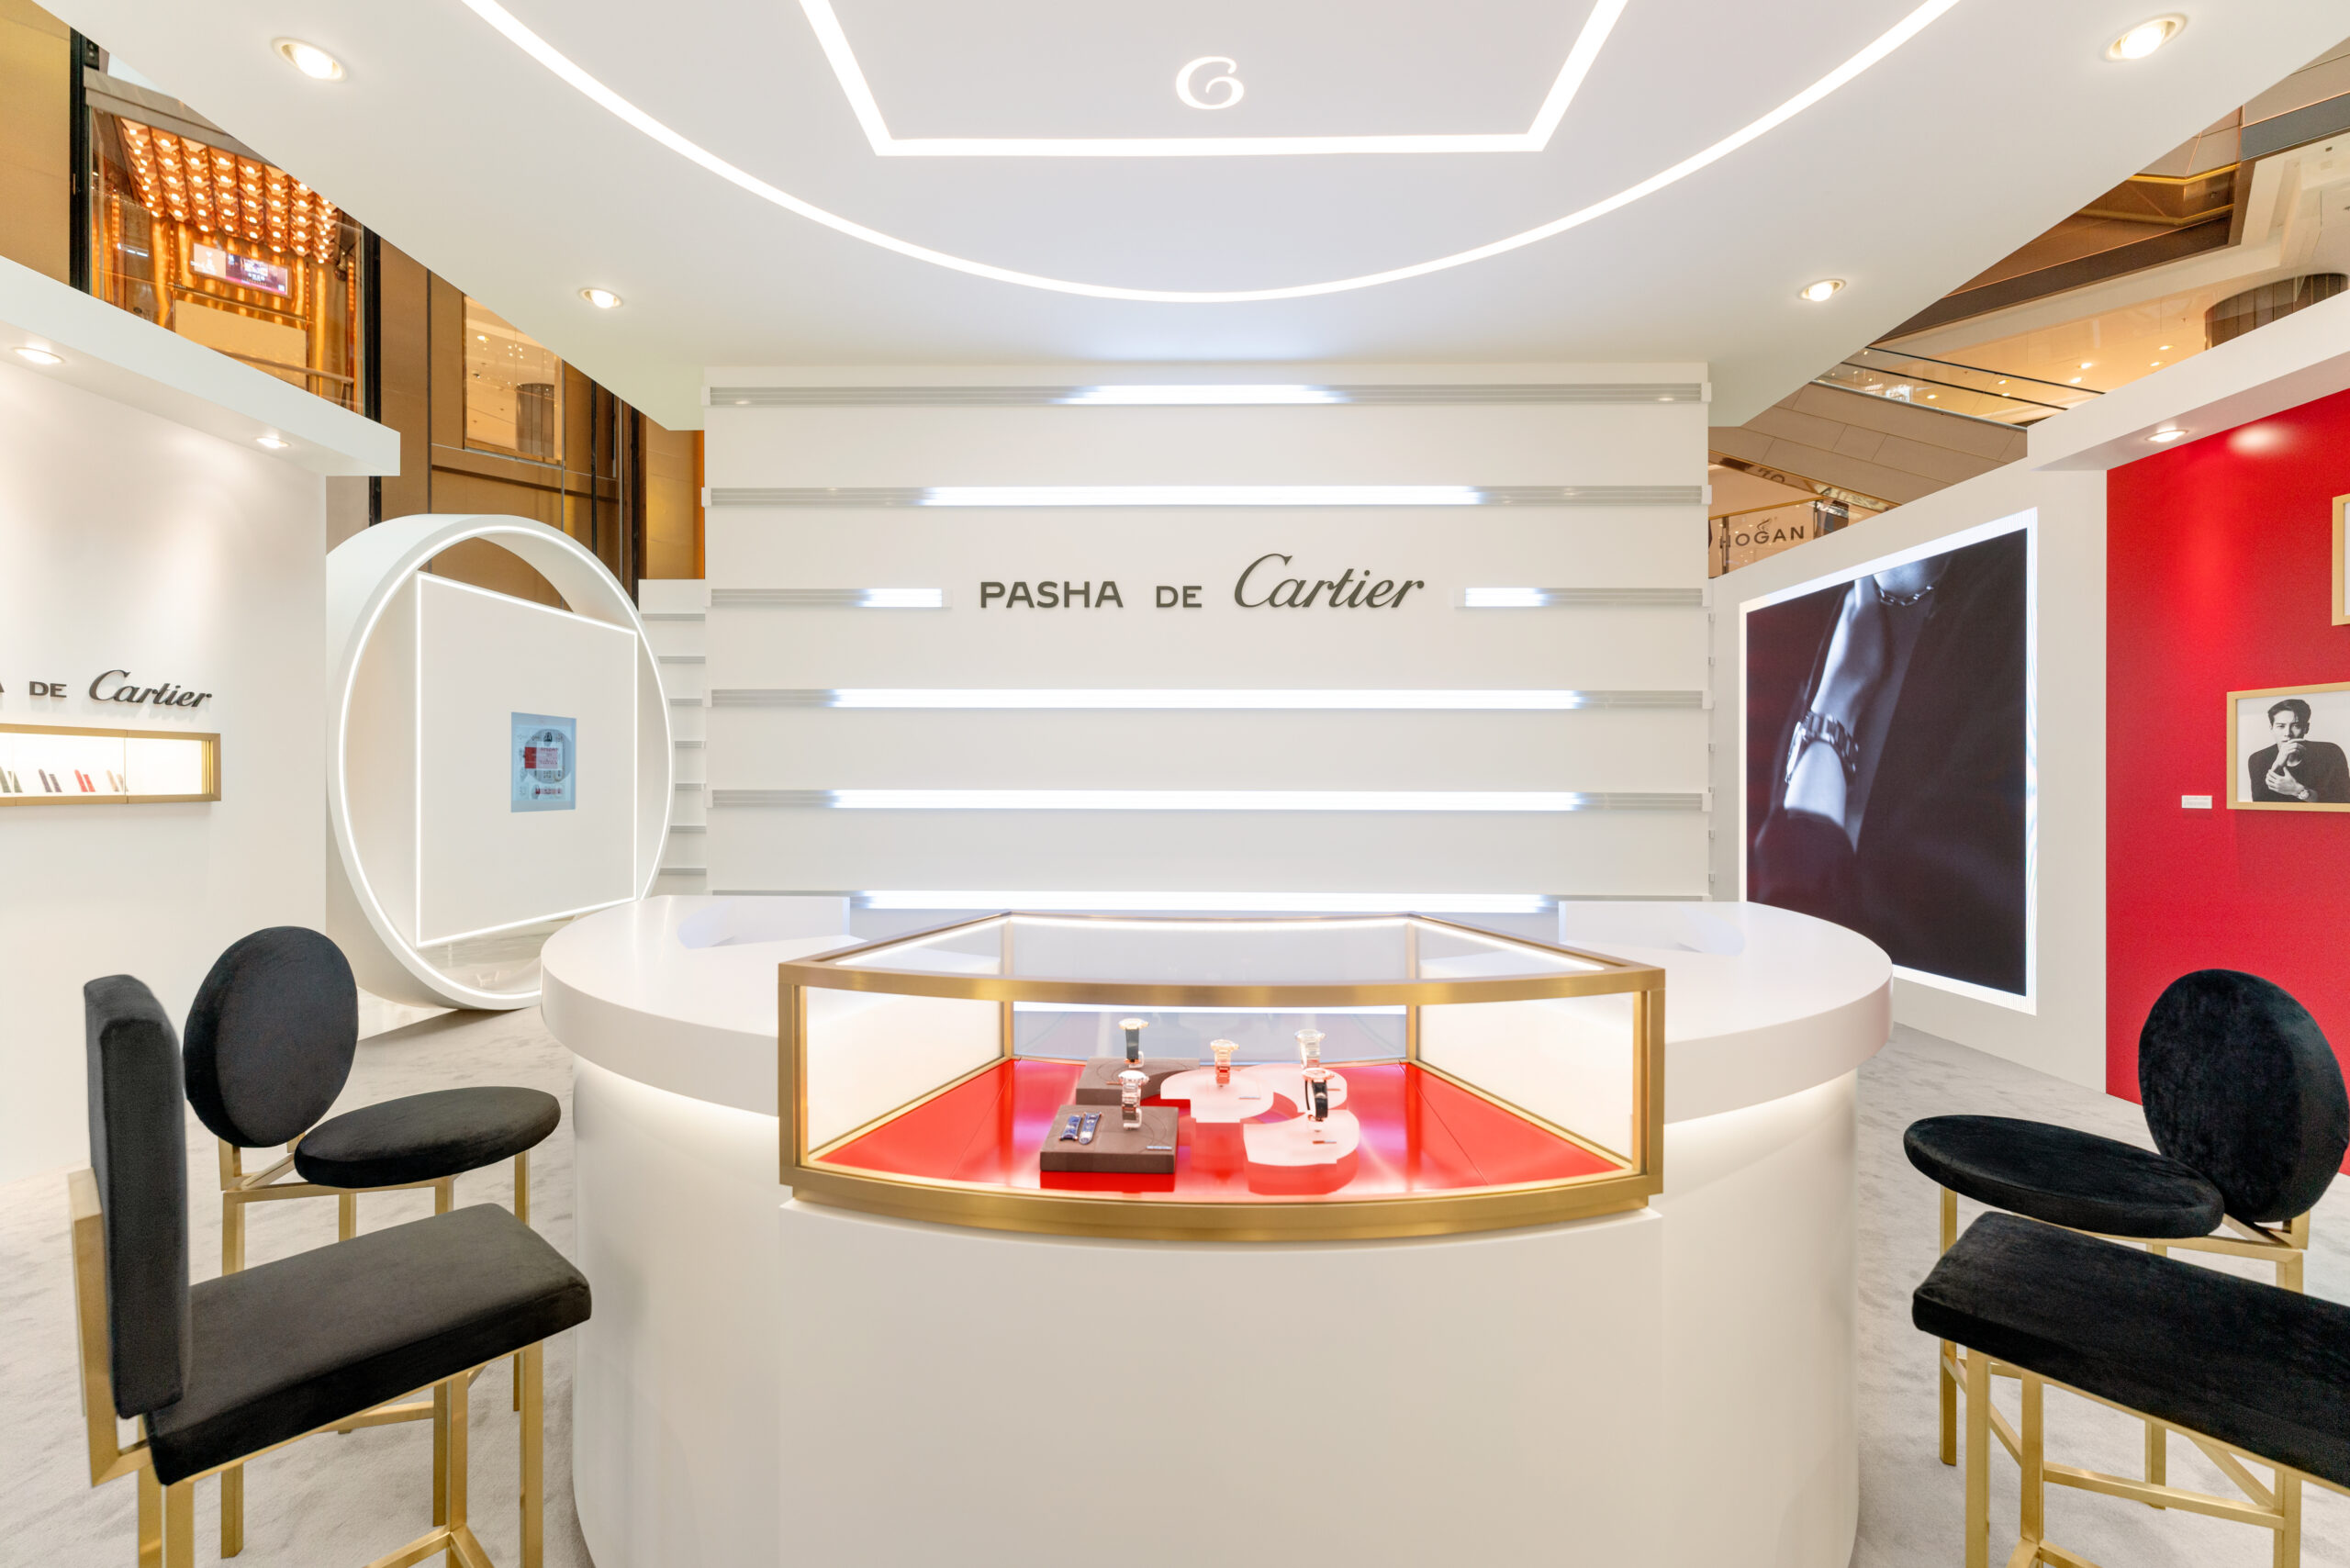 New Pasha de Cartier pop-up storeLuxury Retail